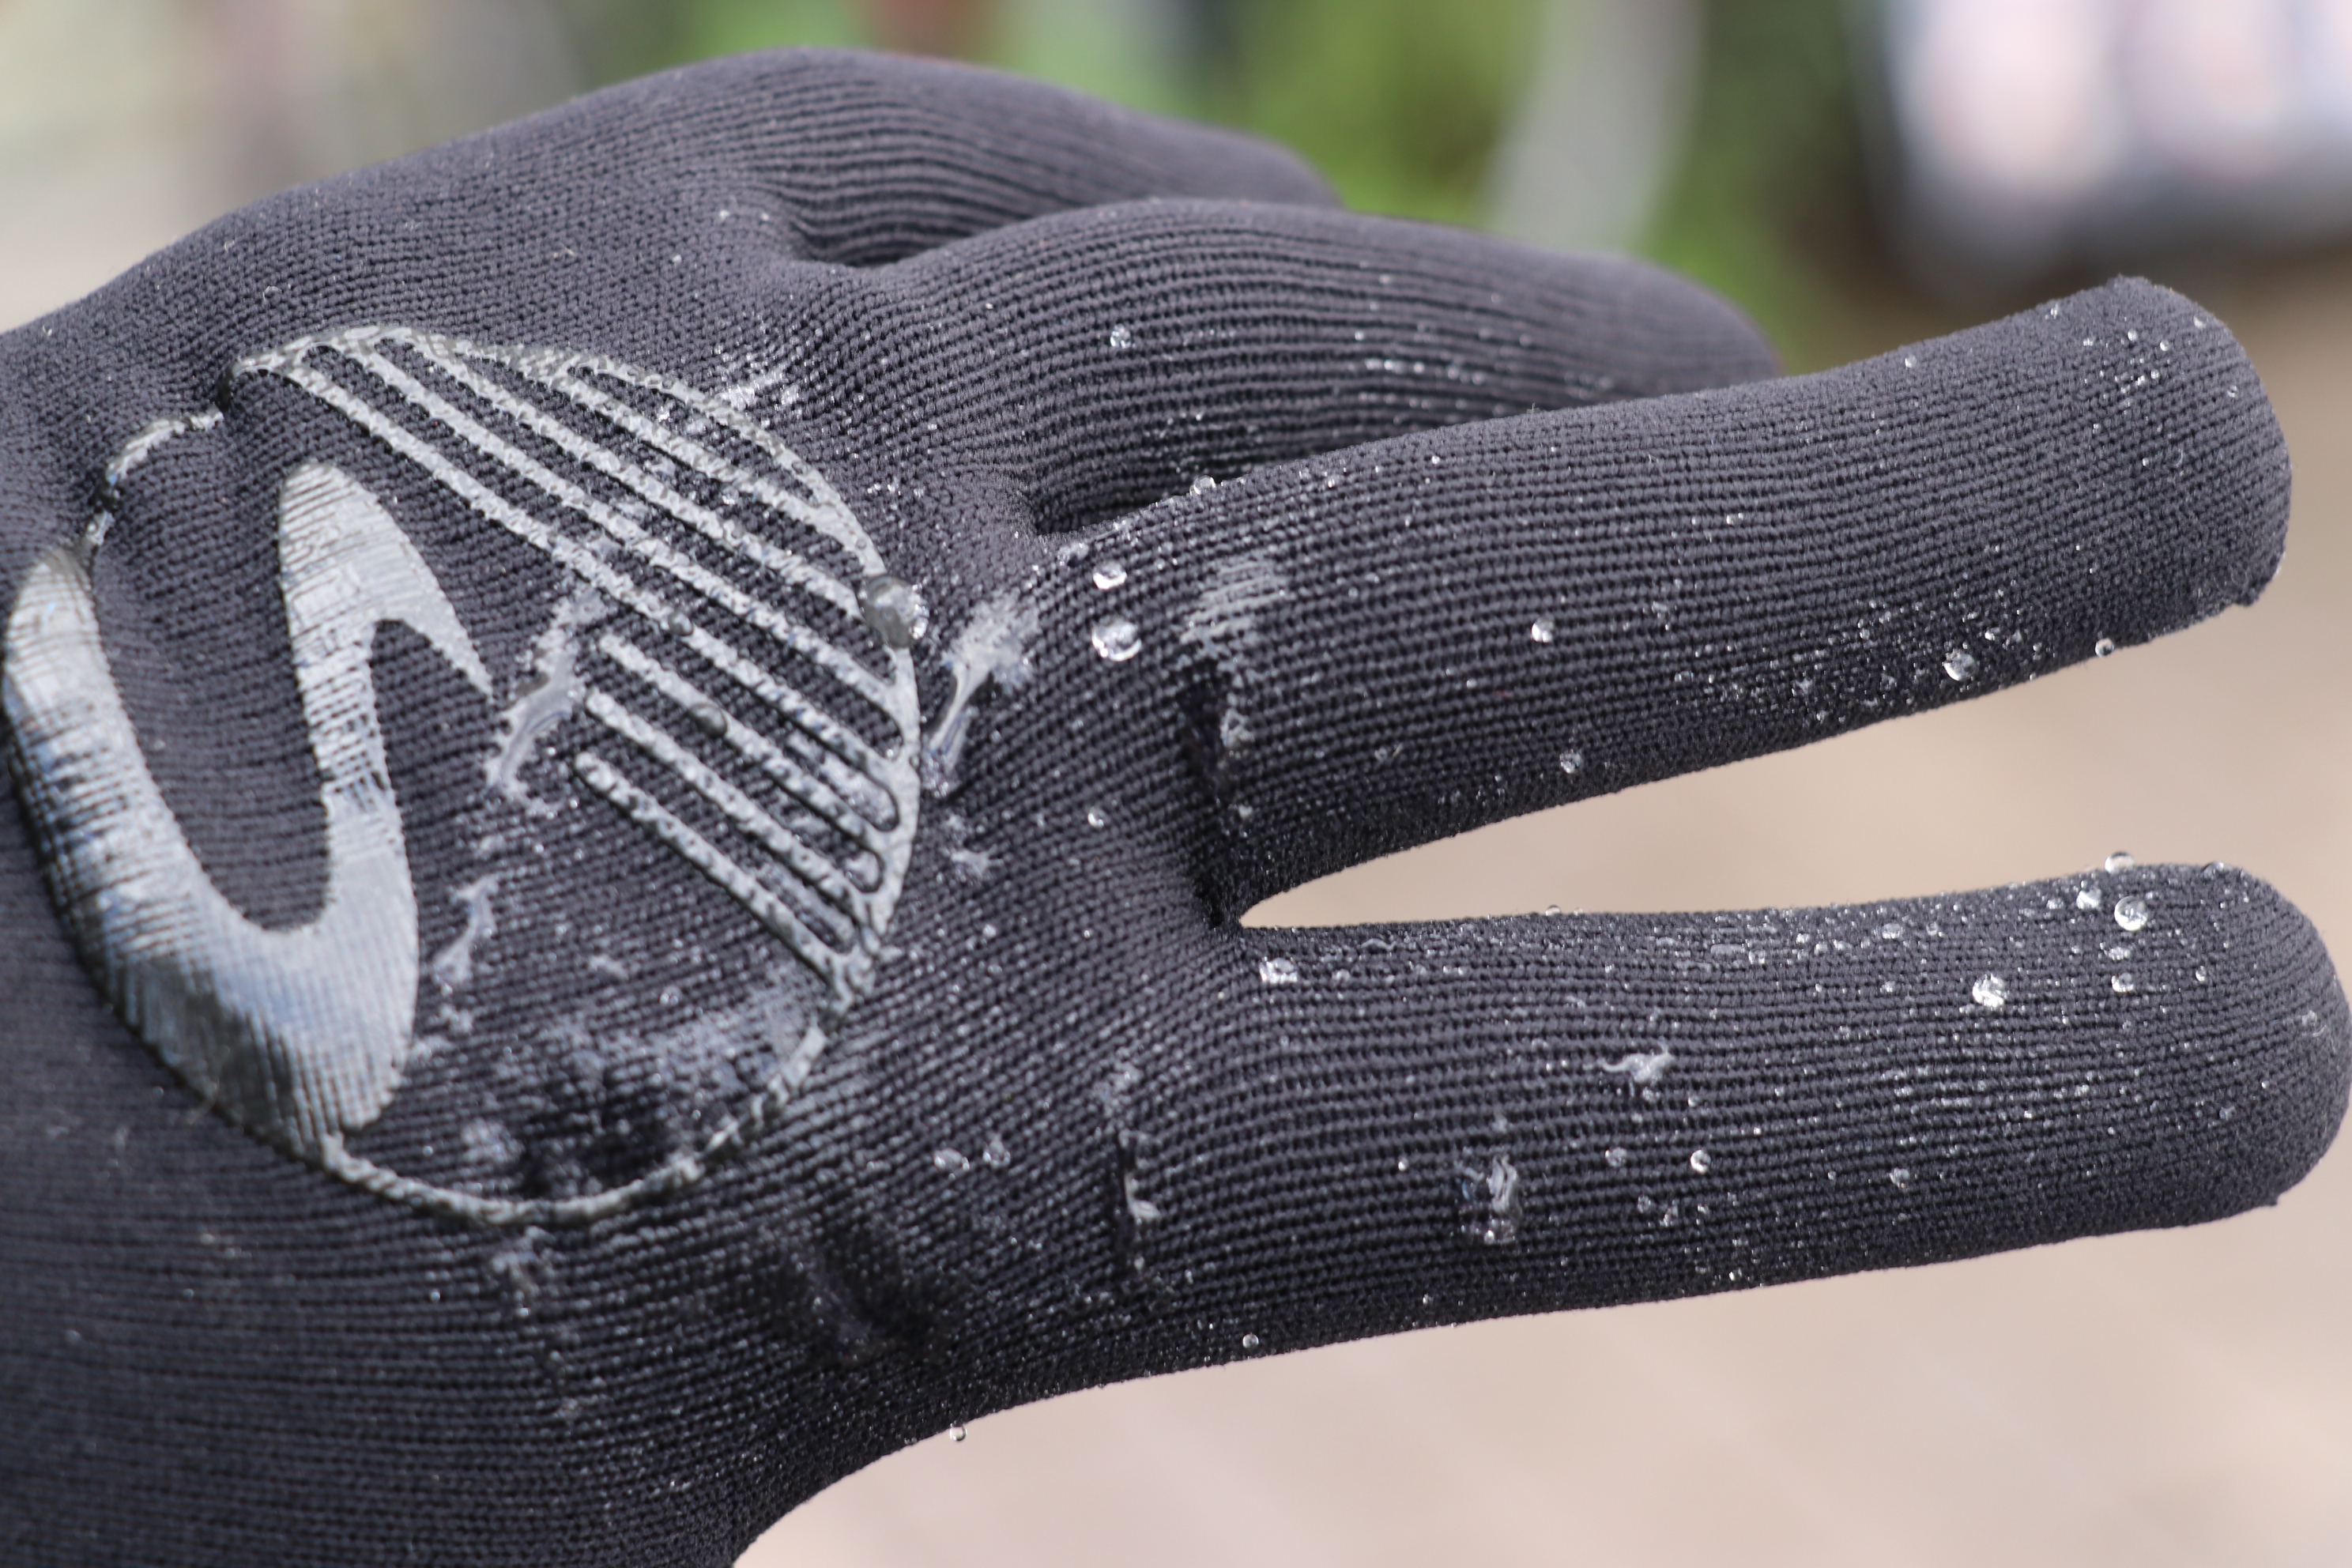 ShowersPass(シャワーズパス) 】Crosspoint Waterproof Knit Gloves（防水グローブ） - 中古スポーツ車・中古 自転車・新車 京都の自転車販売 オンラインショッピング| サイクルショップエイリン